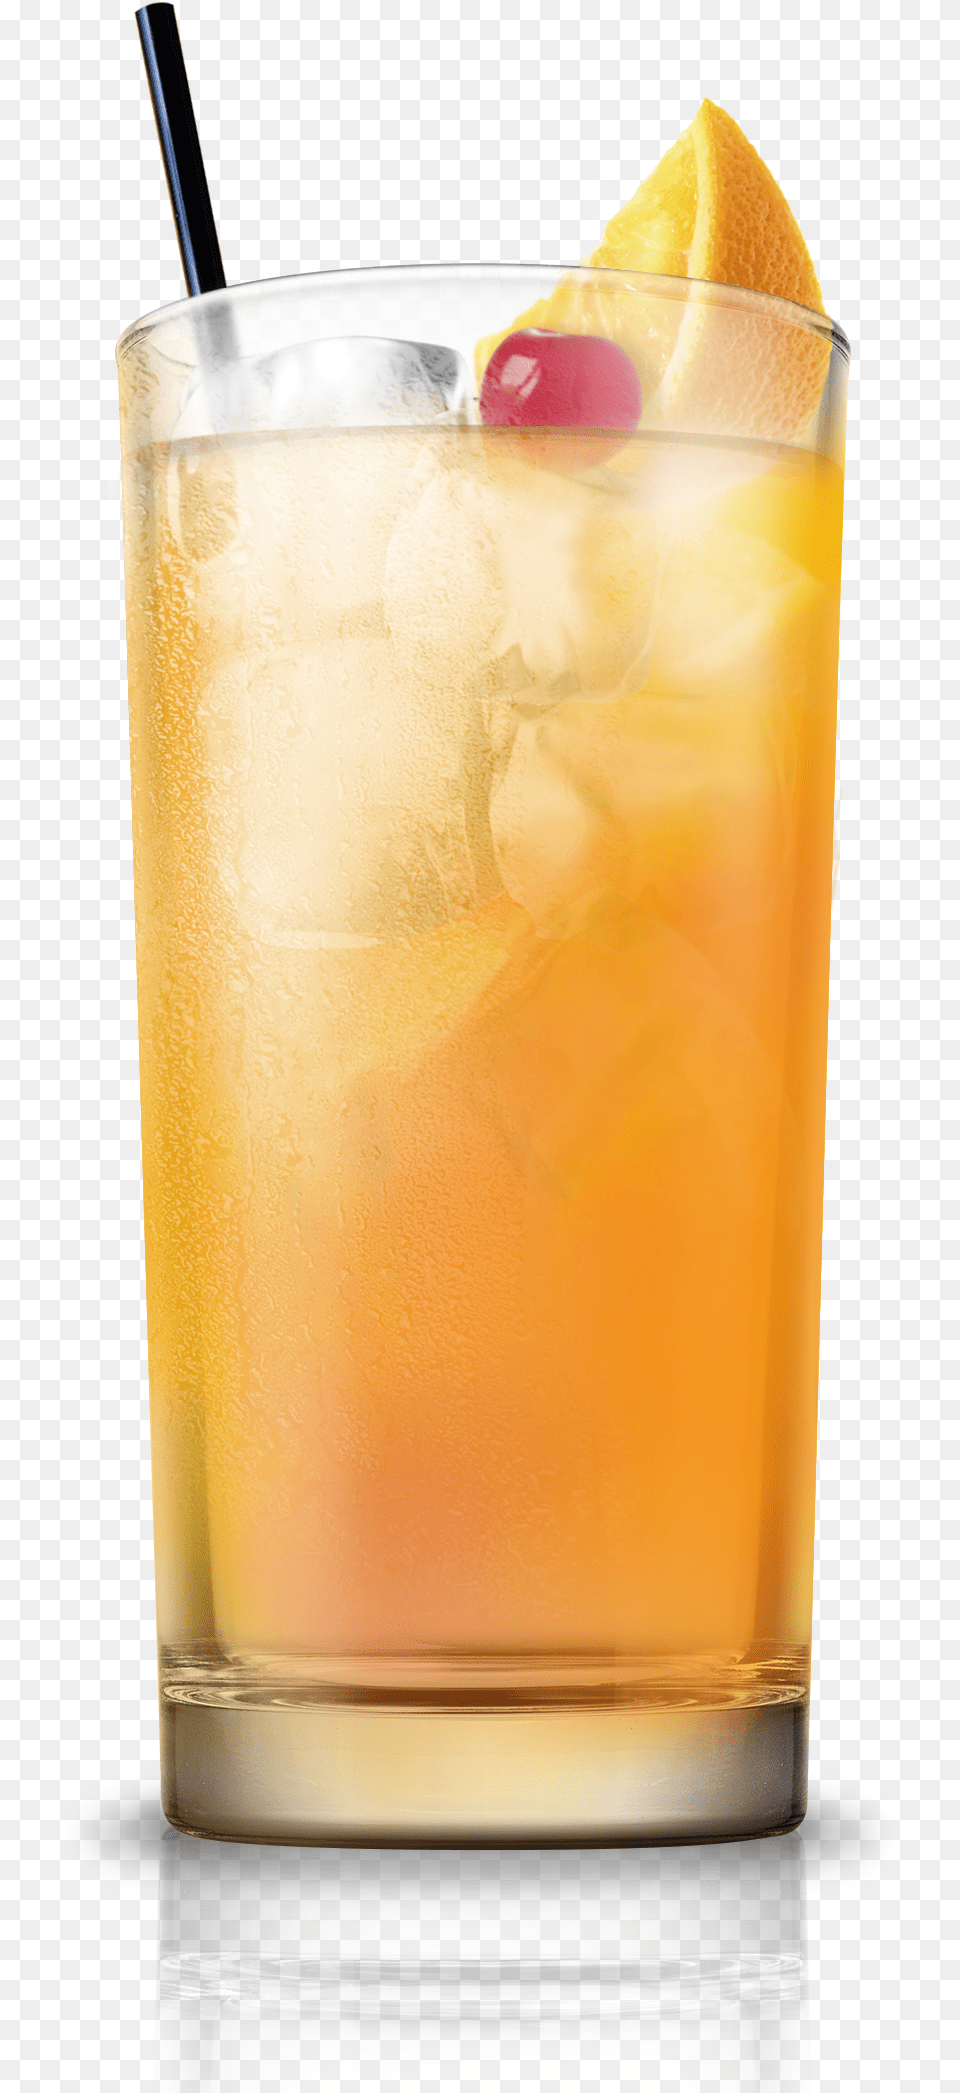 Harvey Wallbanger Harvey Wallbanger Cocktail, Alcohol, Beverage, Juice, Beer Free Png Download